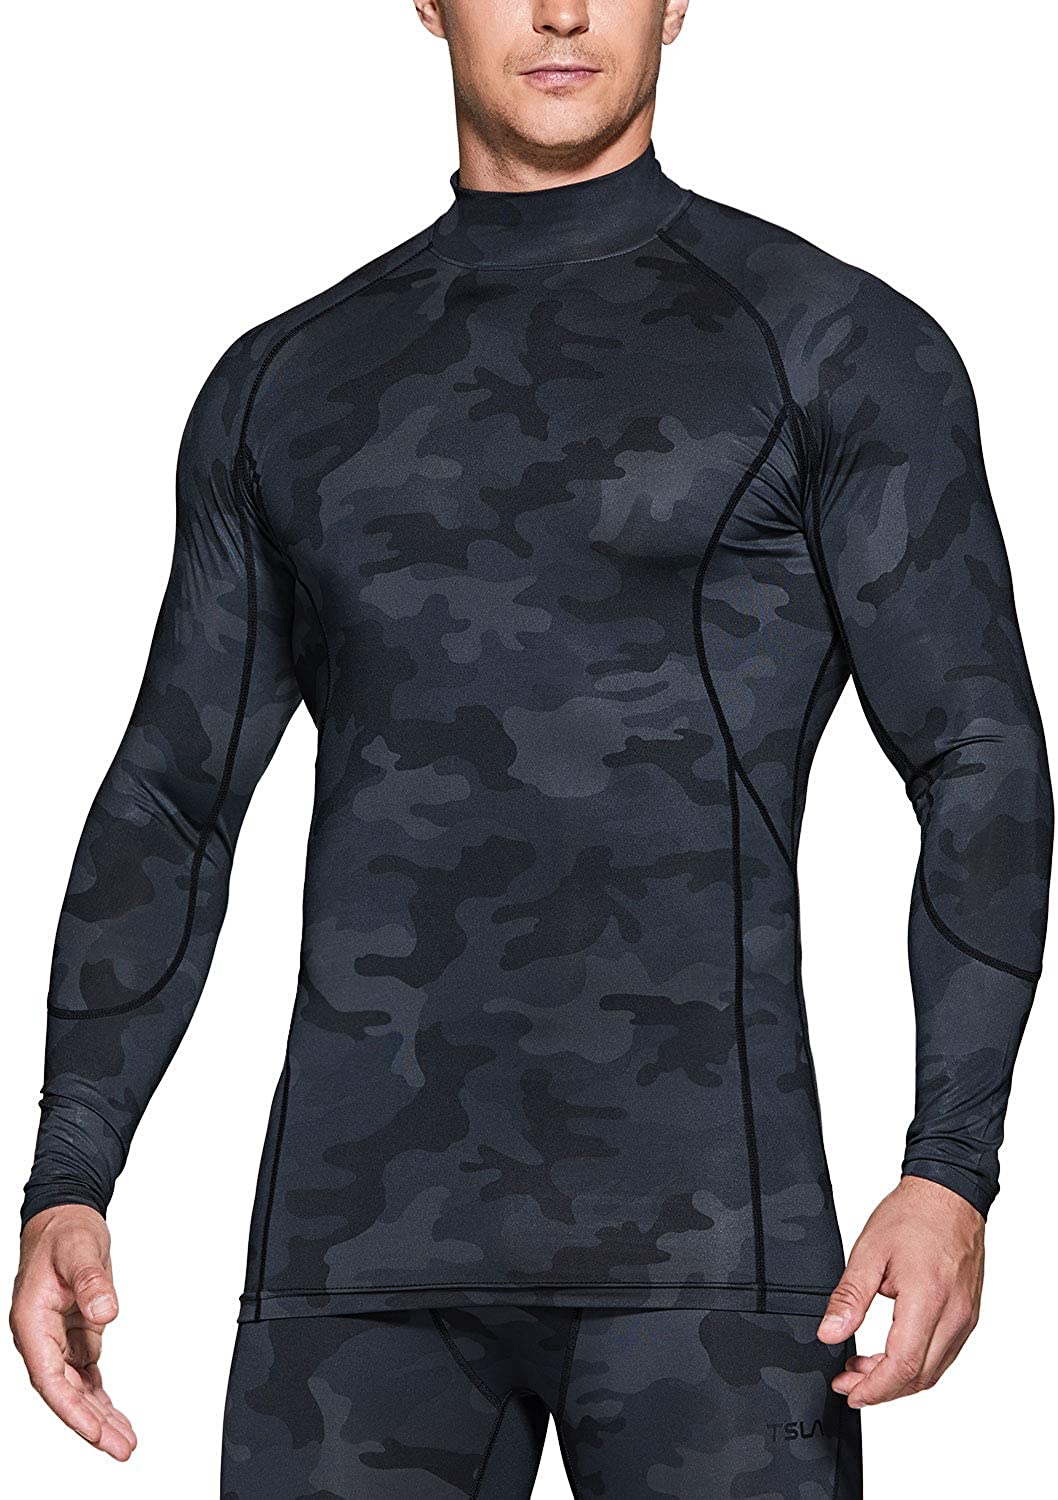 UPF 50 Cool-Dry-Fit TSLA T-shirt d'entraînement à manches longues pour homme avec capuche et masque 